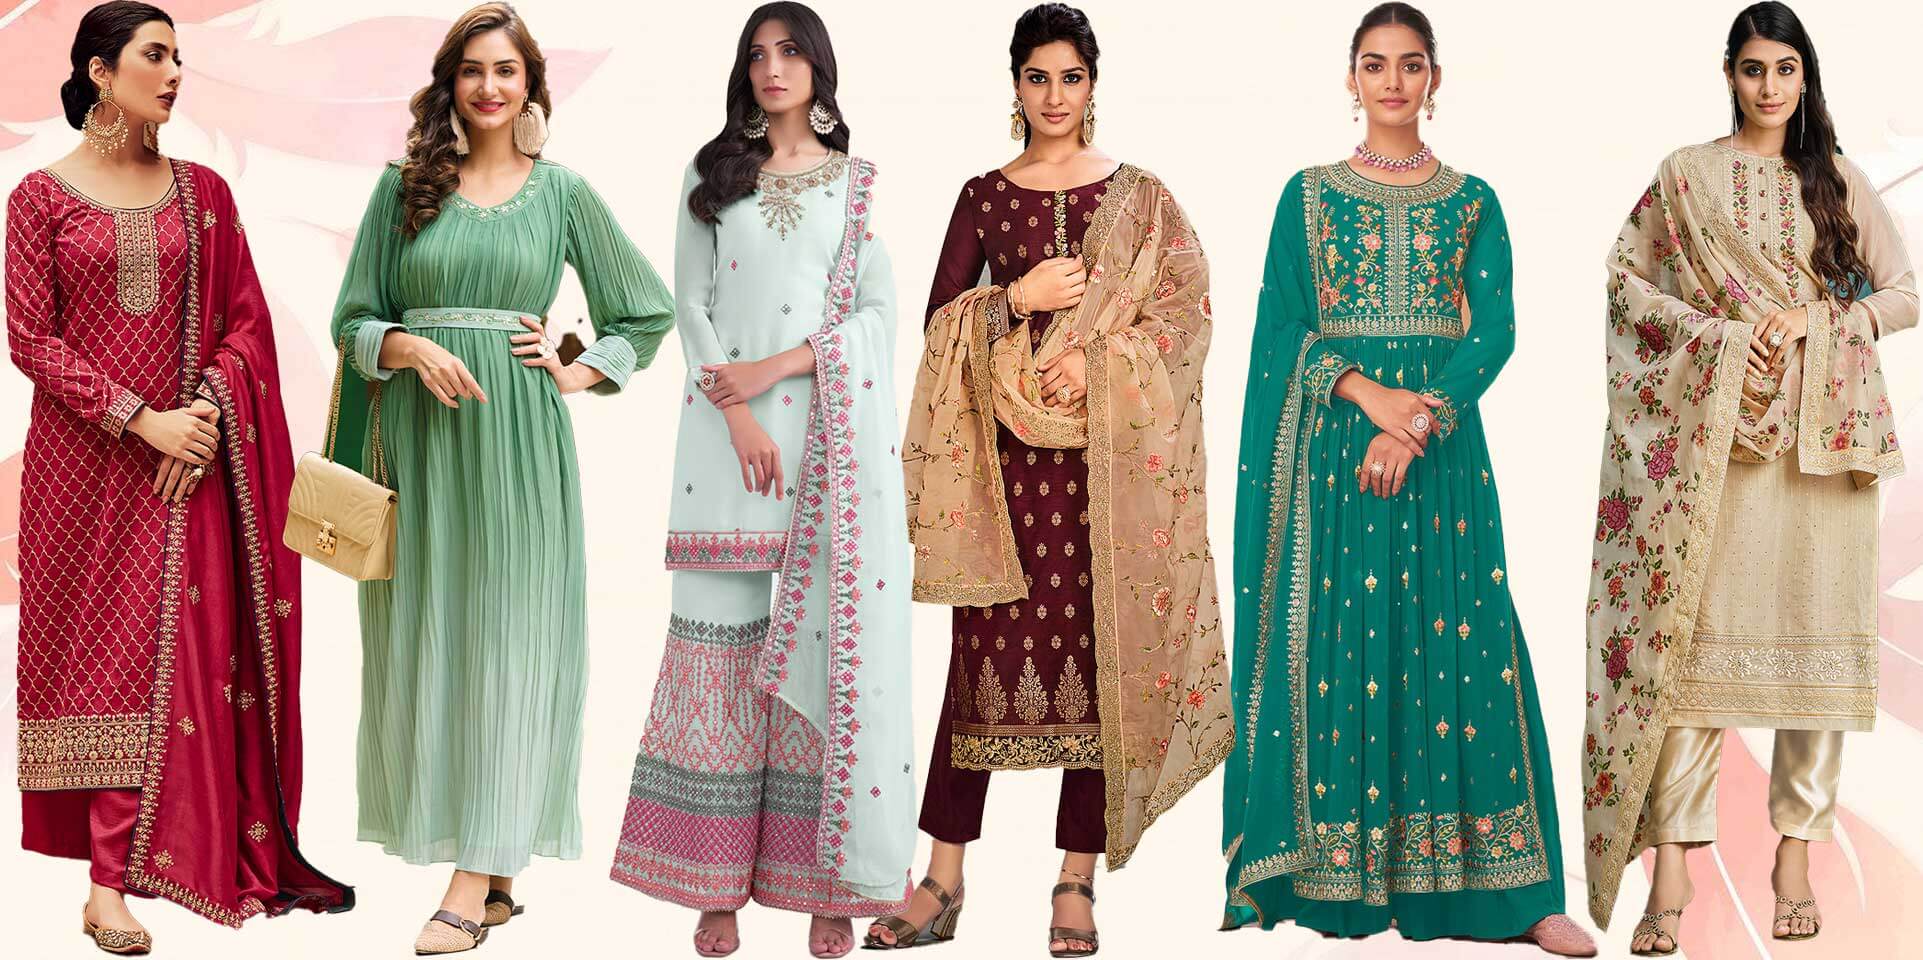 When Should We Wear Salwar Suit? Is Salwar Kameez Formal Wear?